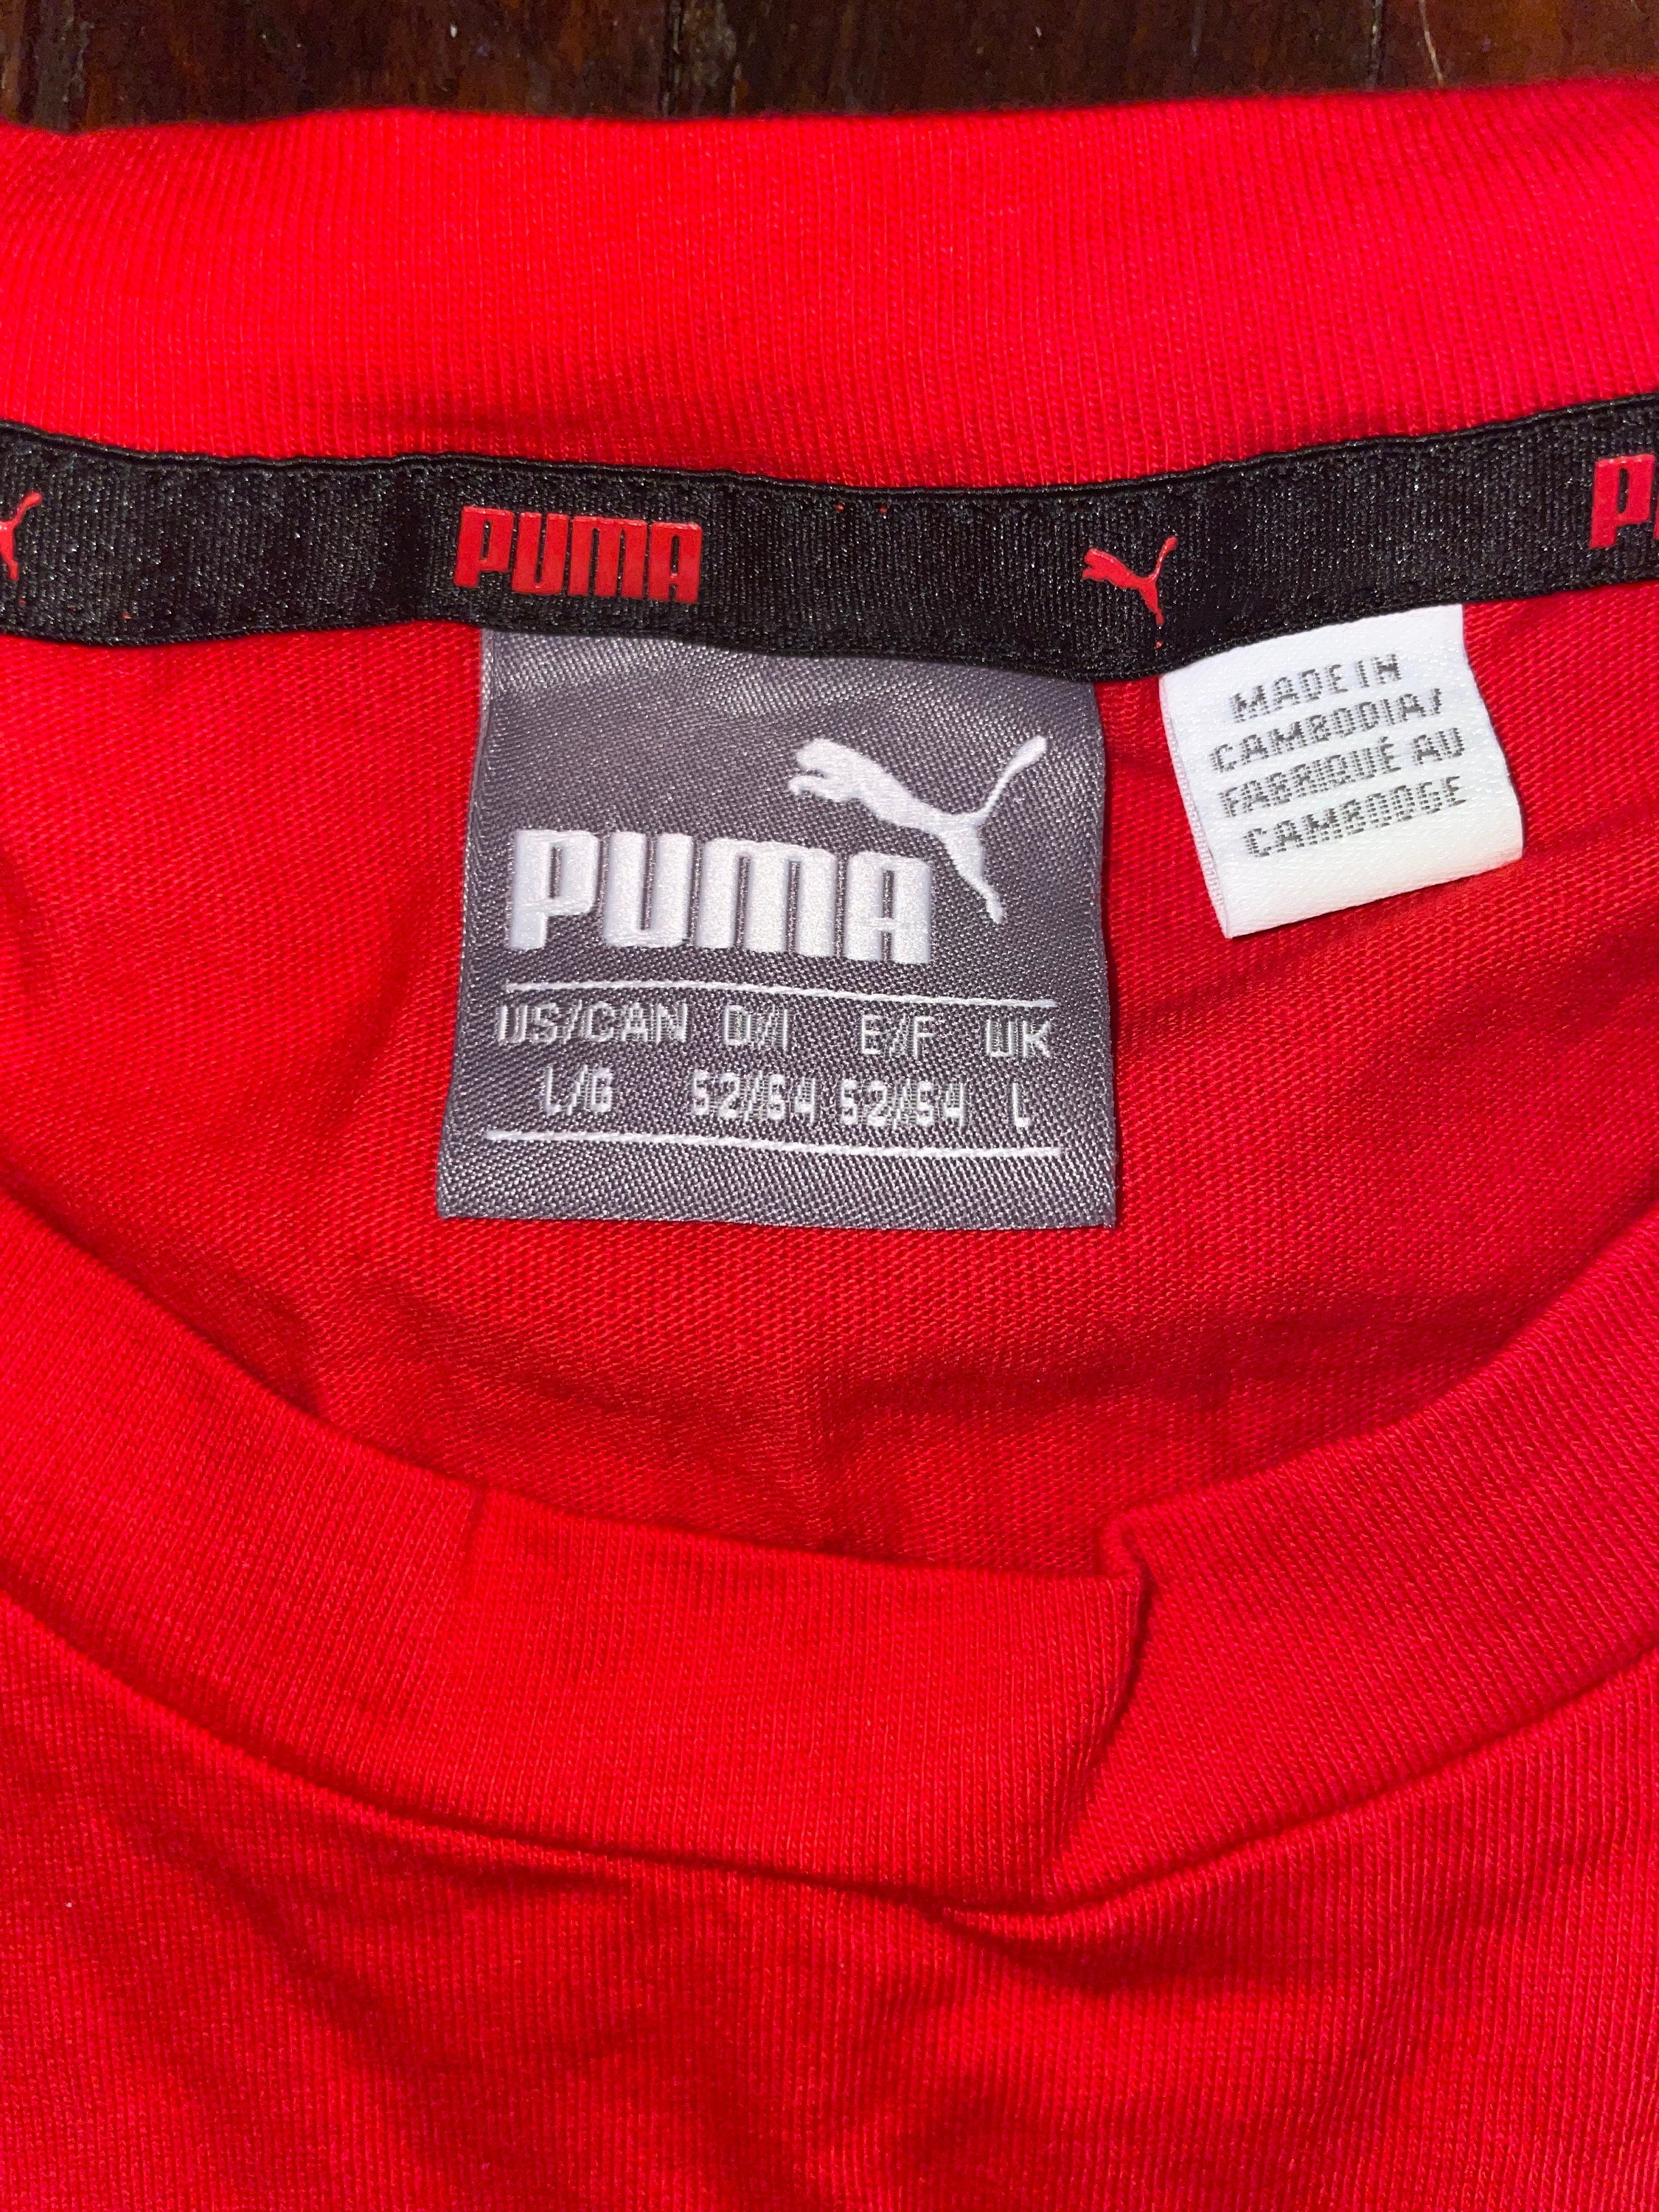 - Red Black and PUMA Etsy Tshirt